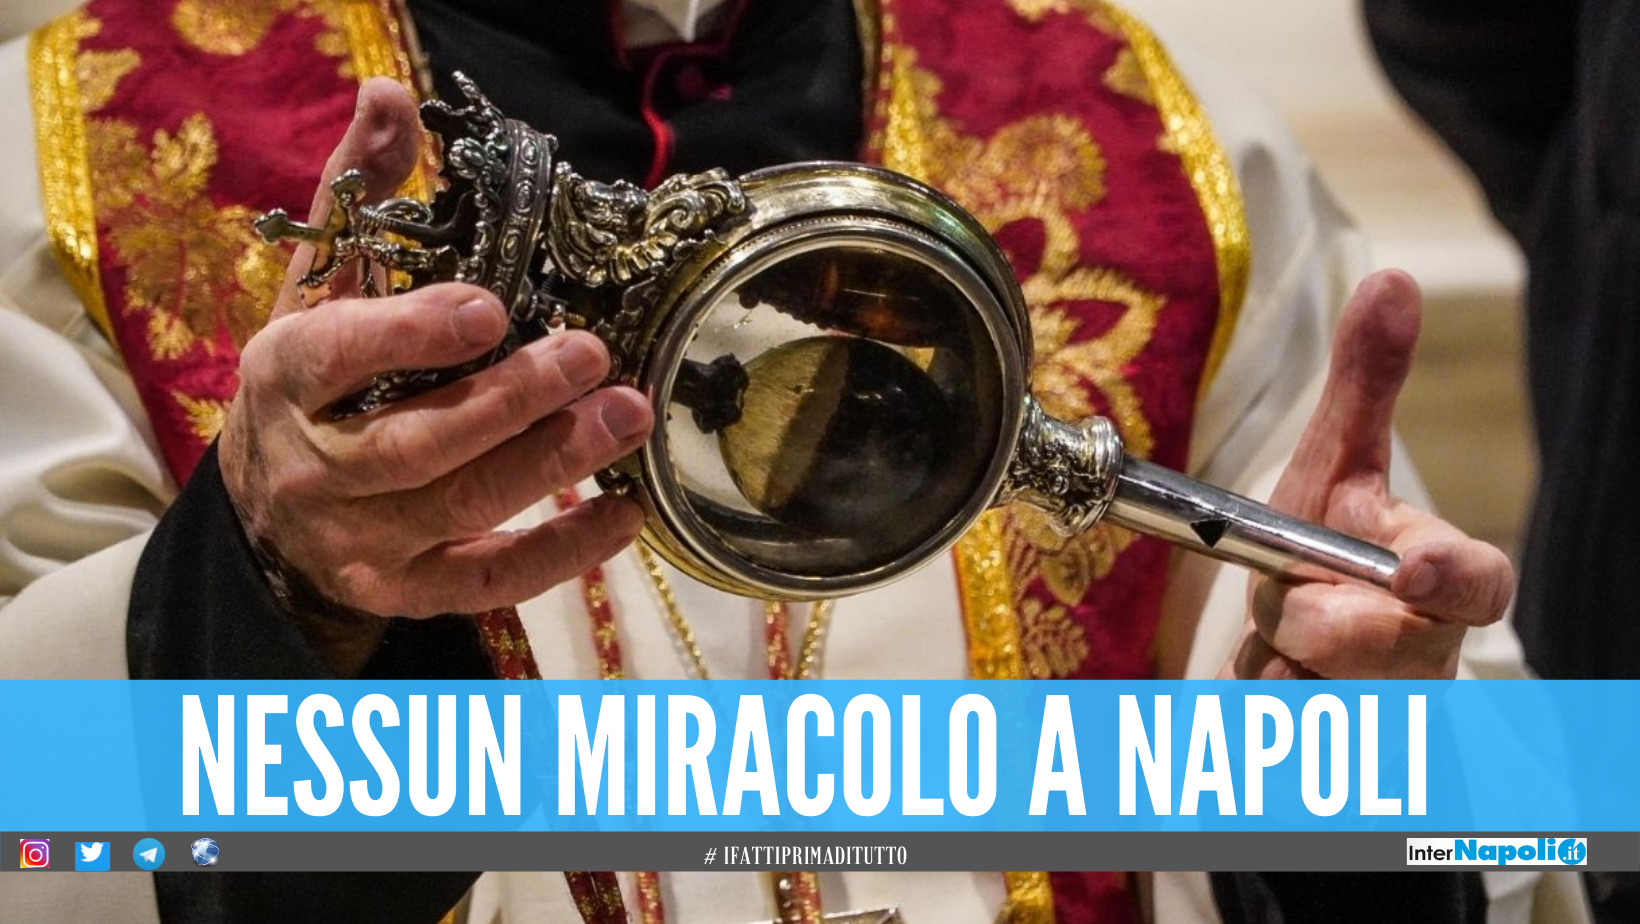 Niente miracolo a Napoli, il sangue di San Gennaro non si è sciolto